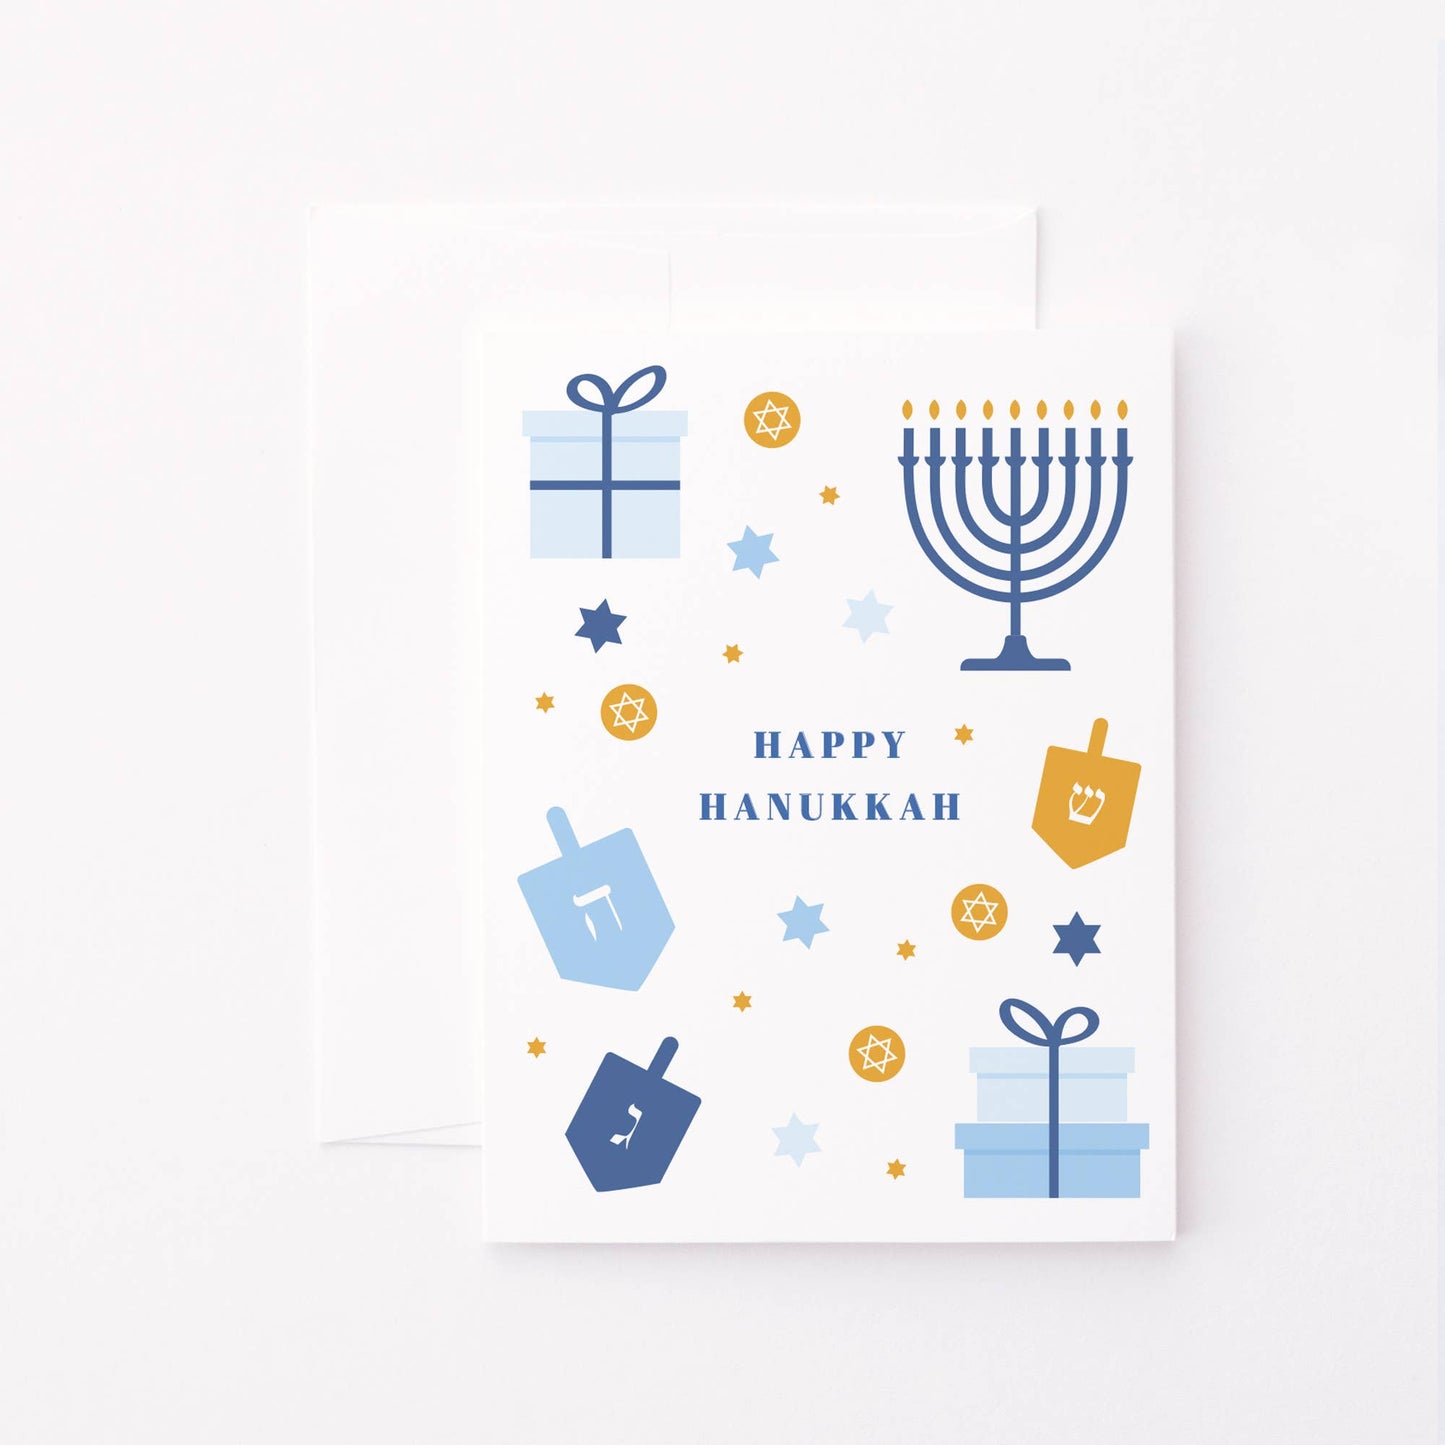 Classic Hanukkah Card